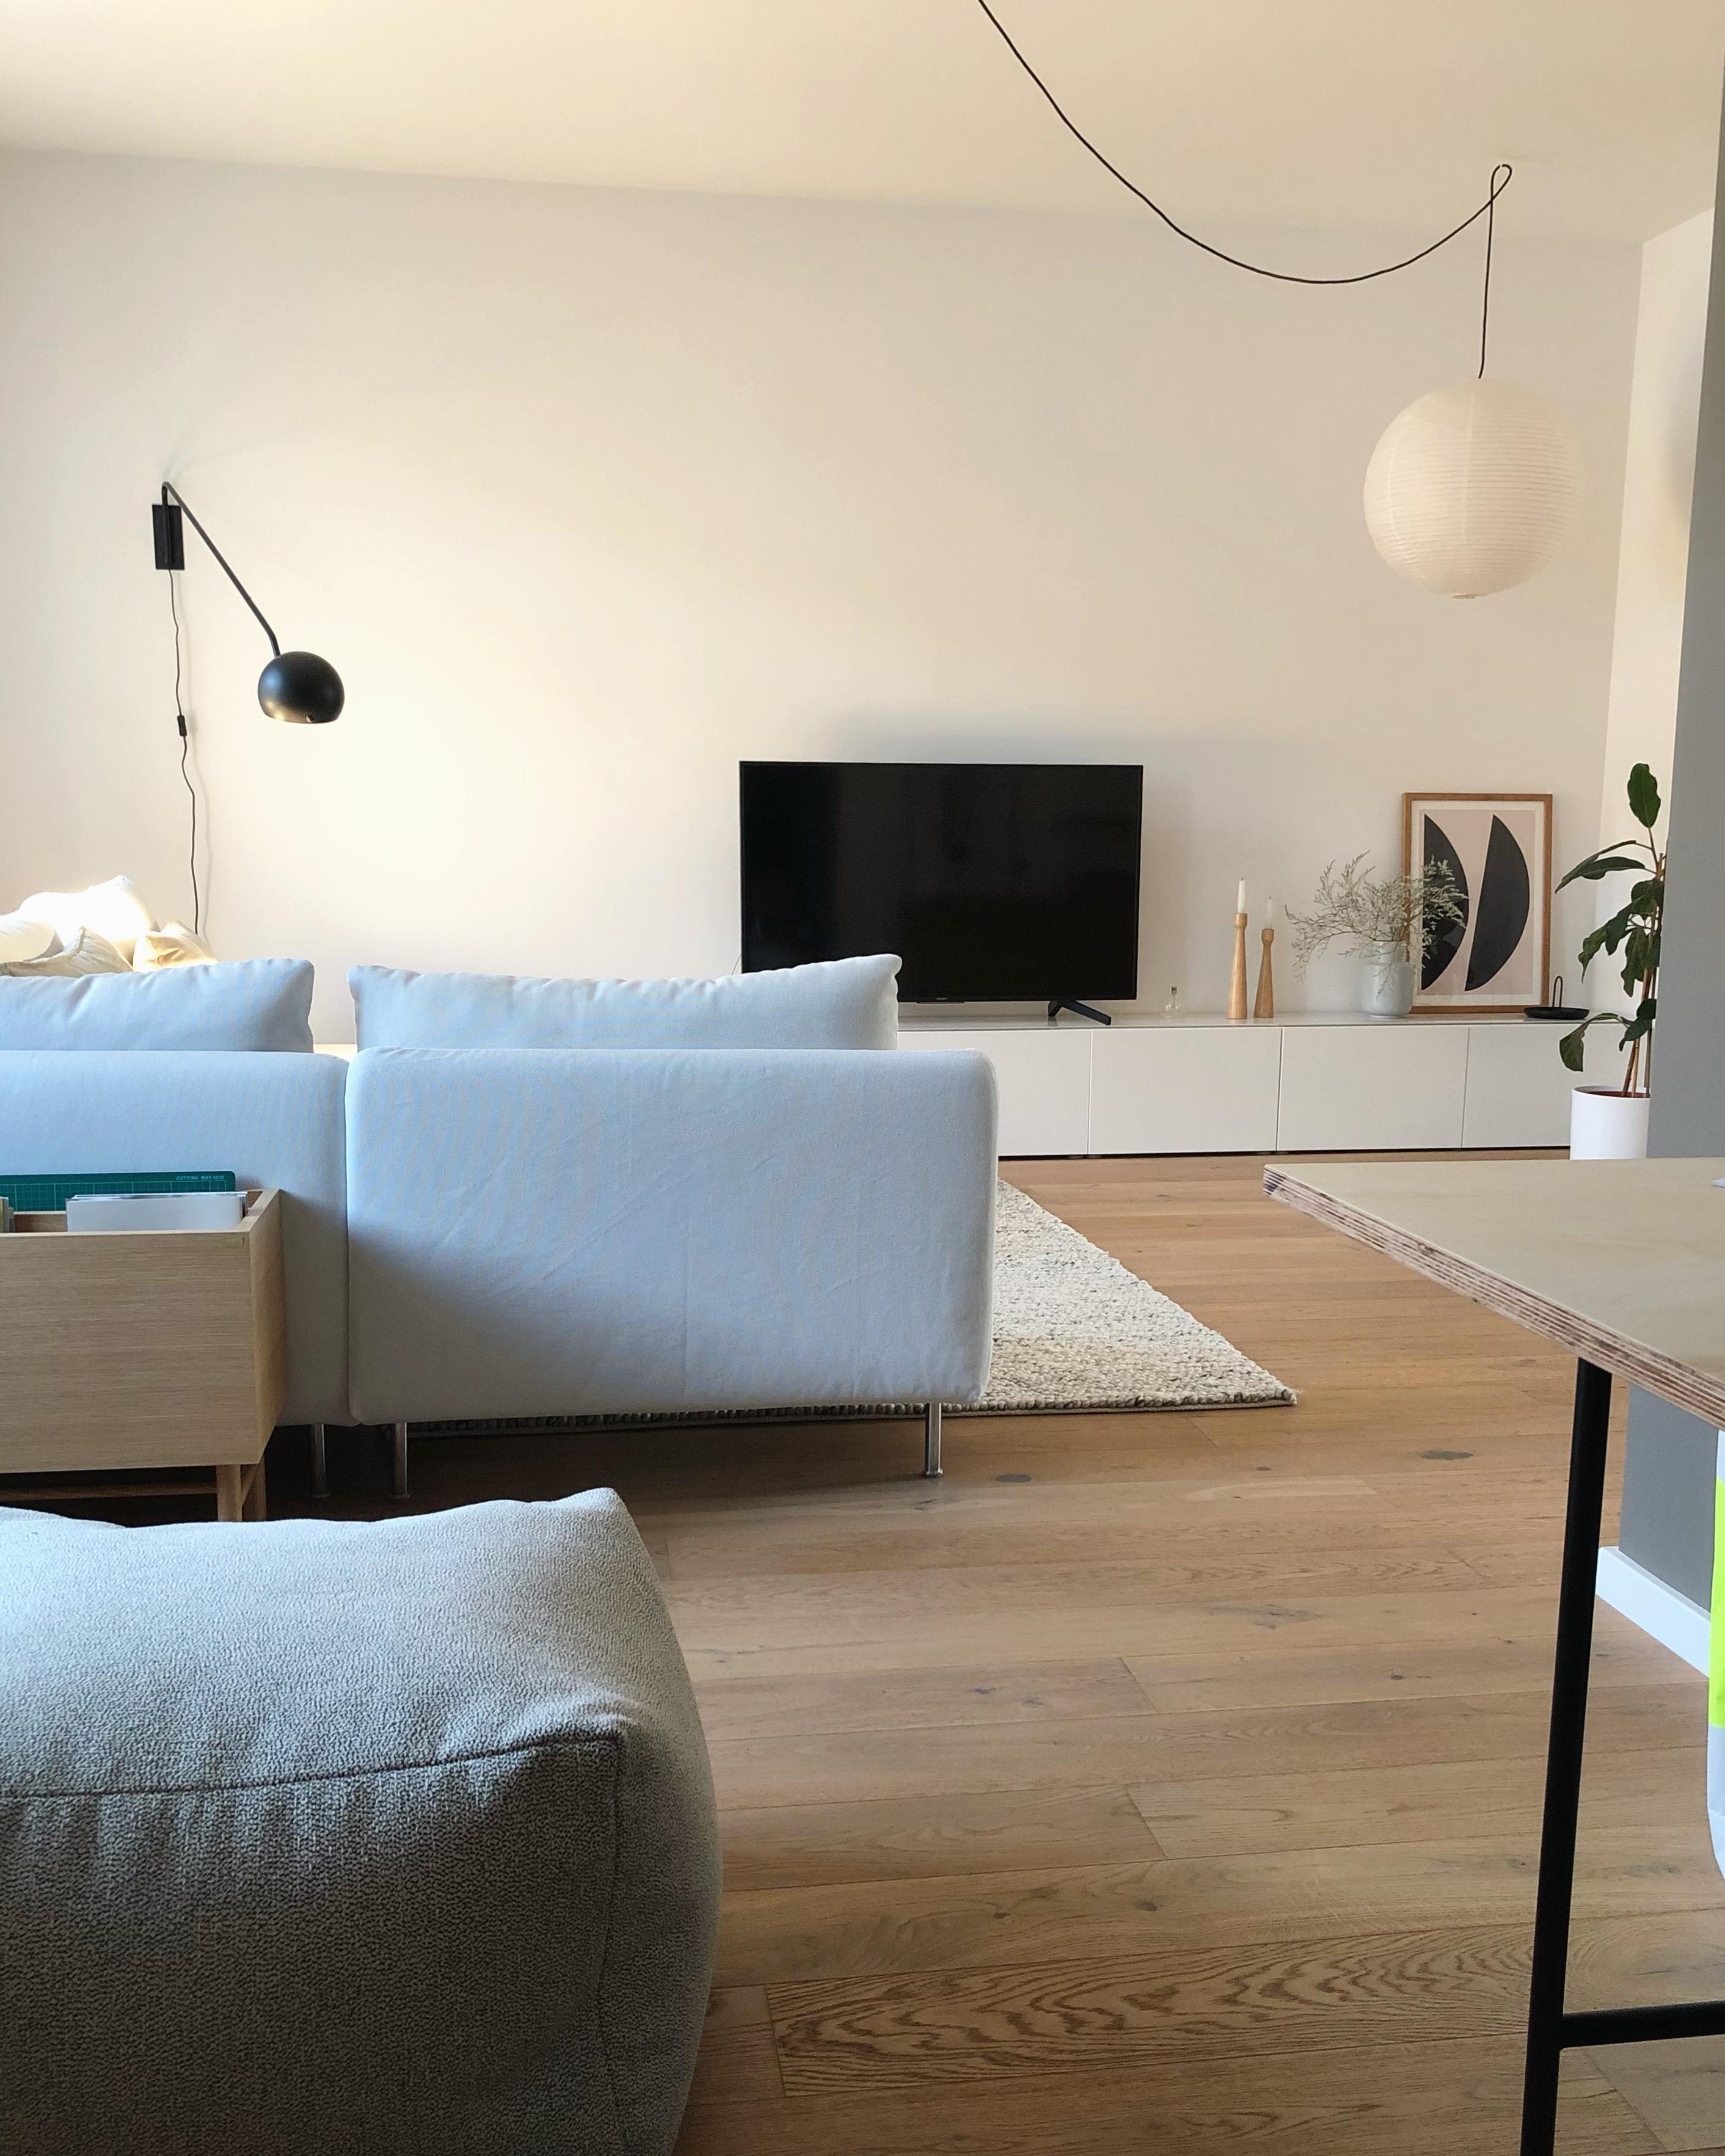 #livingroom #wohnzimmer #interior #interieur #couch #couchstyle #home #plantbox #ikea #lampe #wanddeko #skandi #nordic